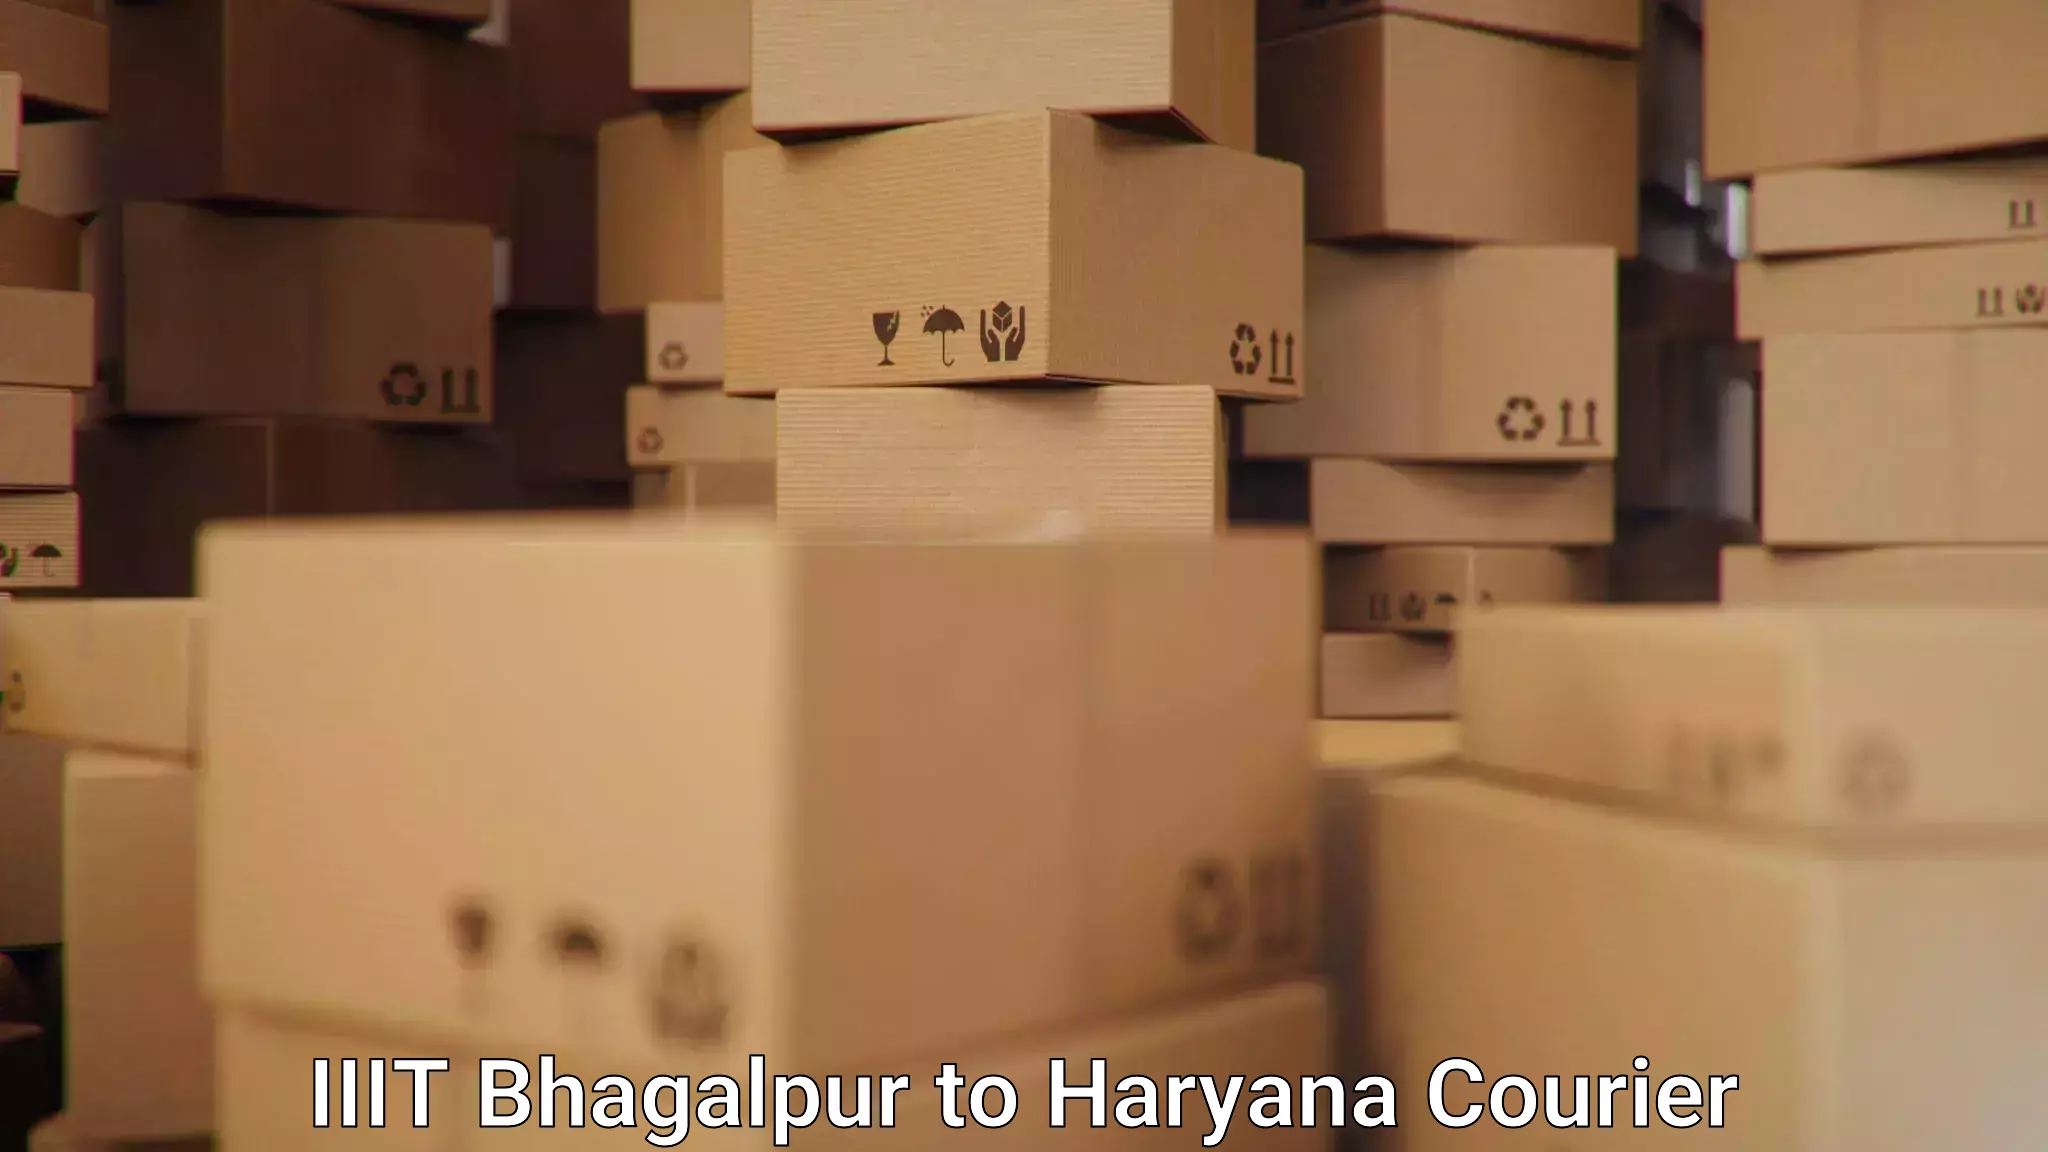 Premium courier solutions IIIT Bhagalpur to Sohna